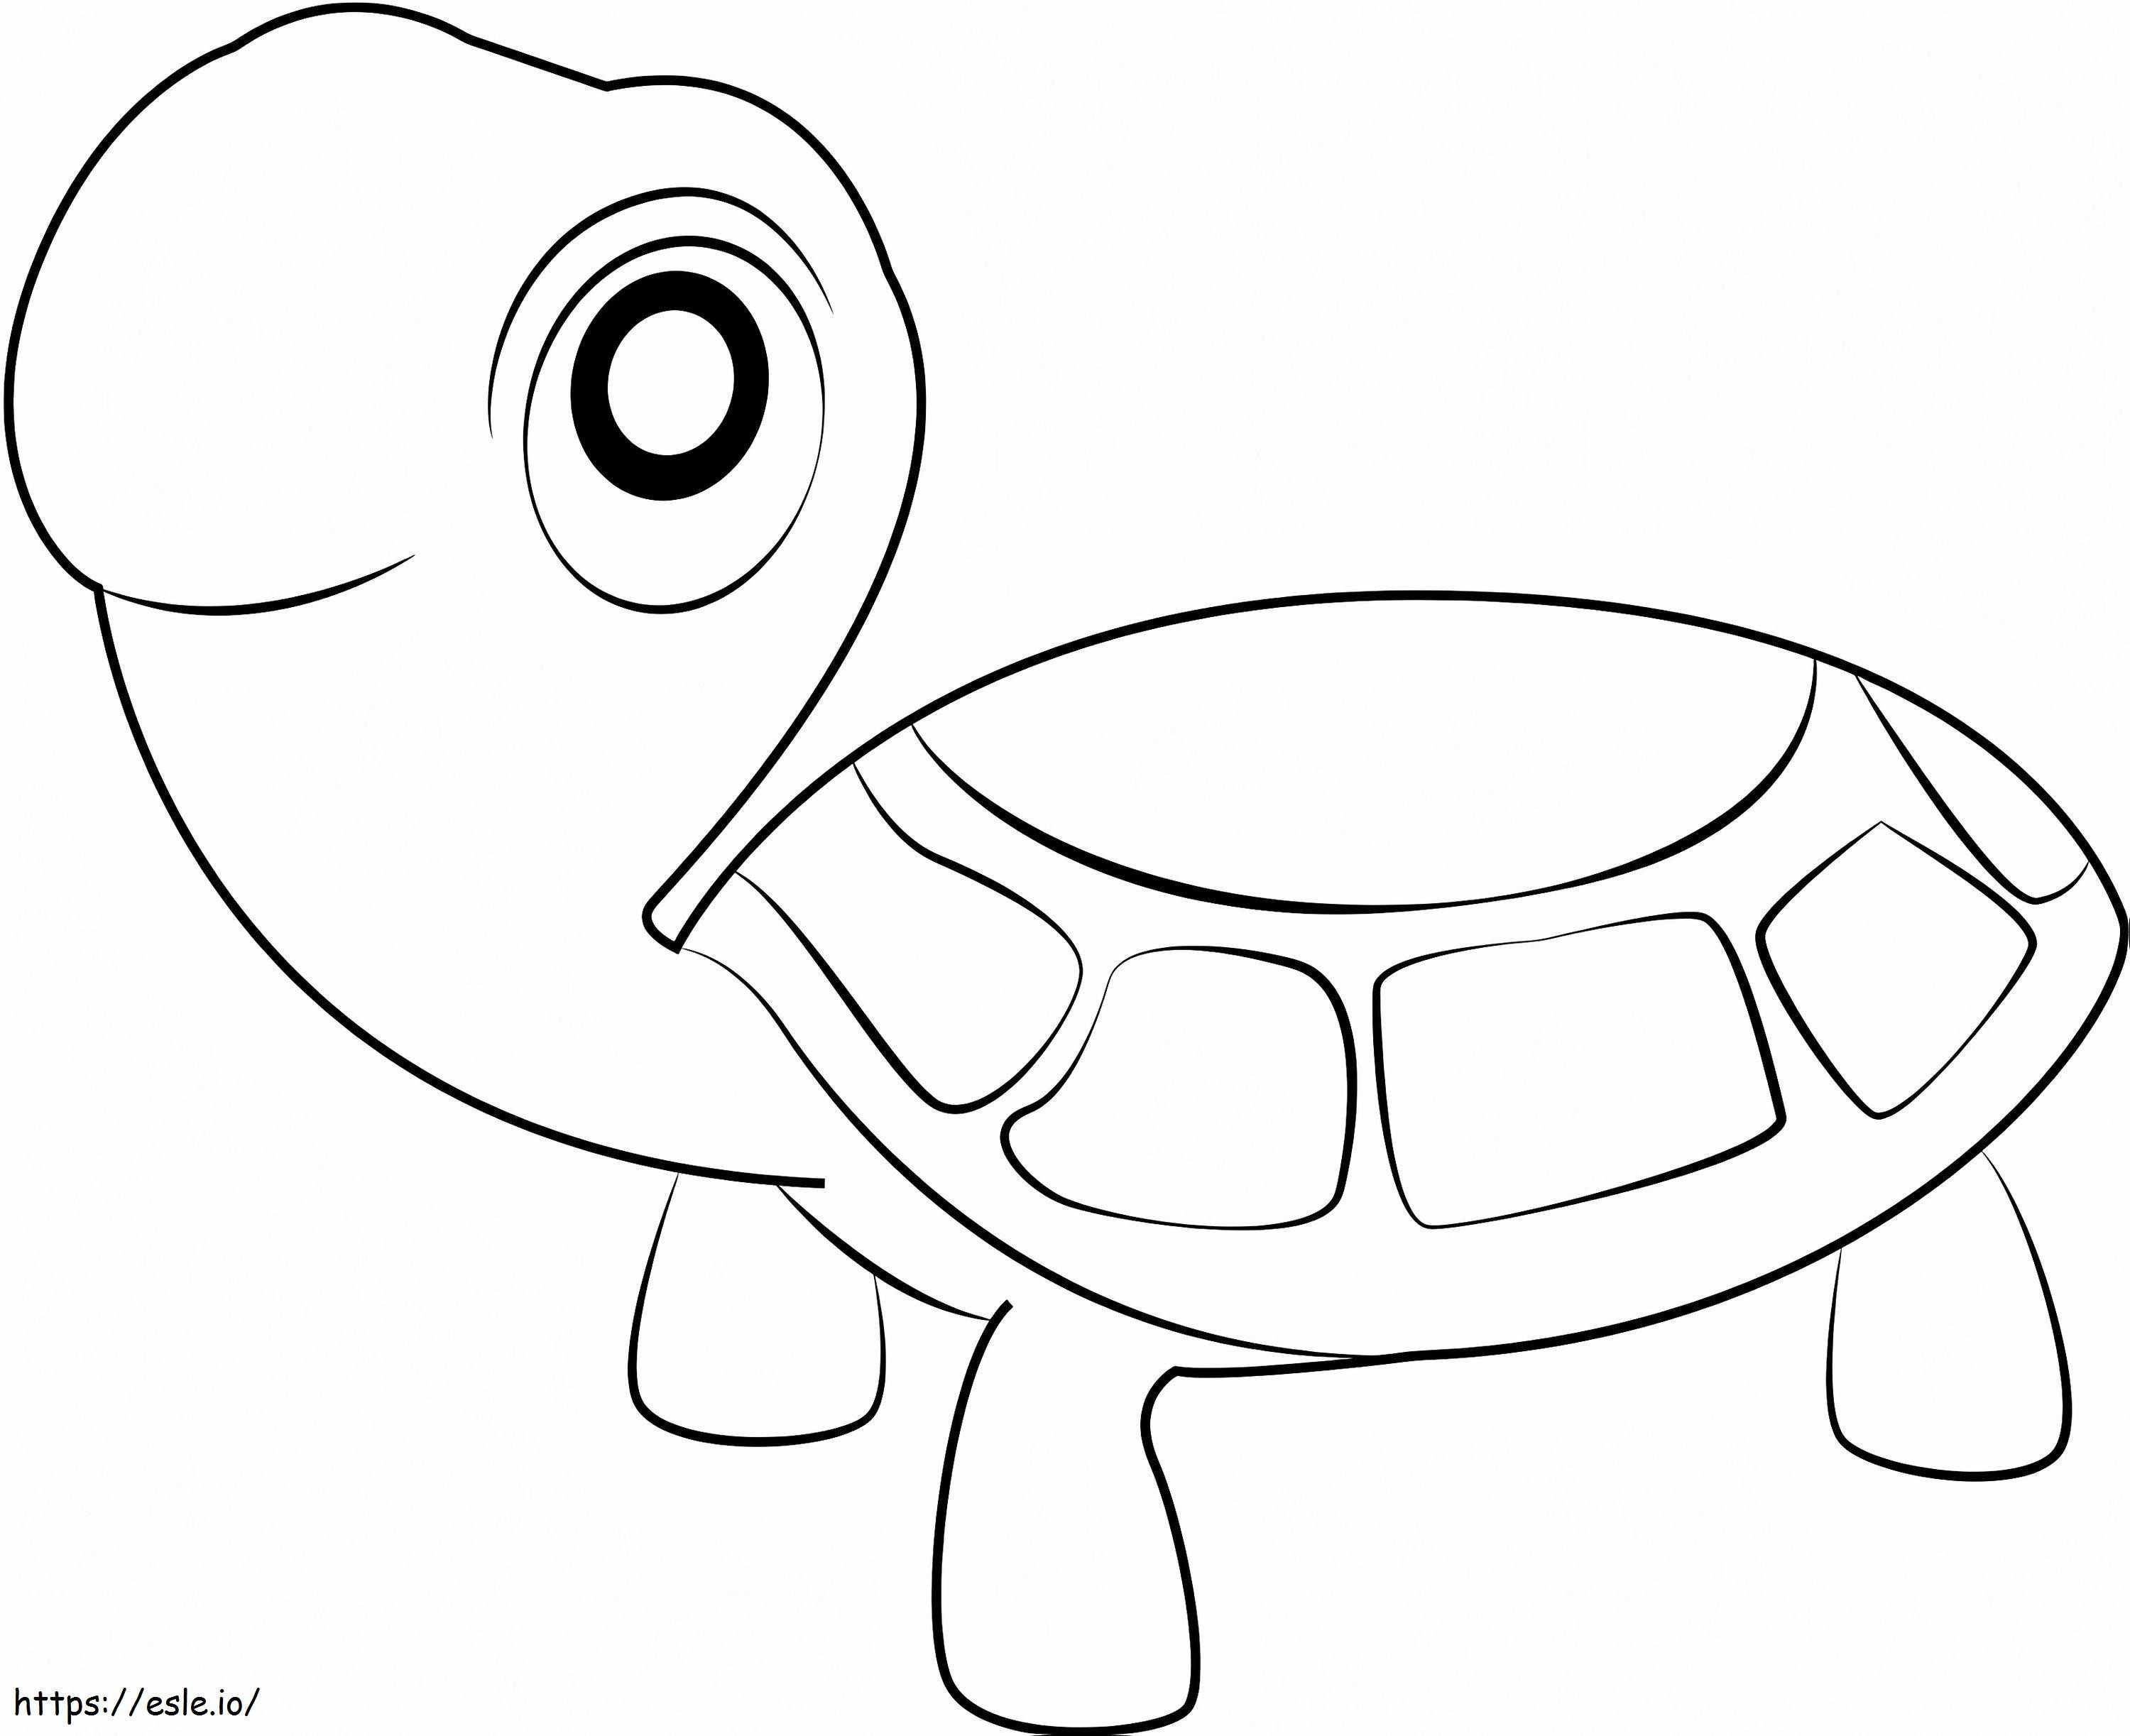 1530323207 De schildpadden kleurplaat kleurplaat